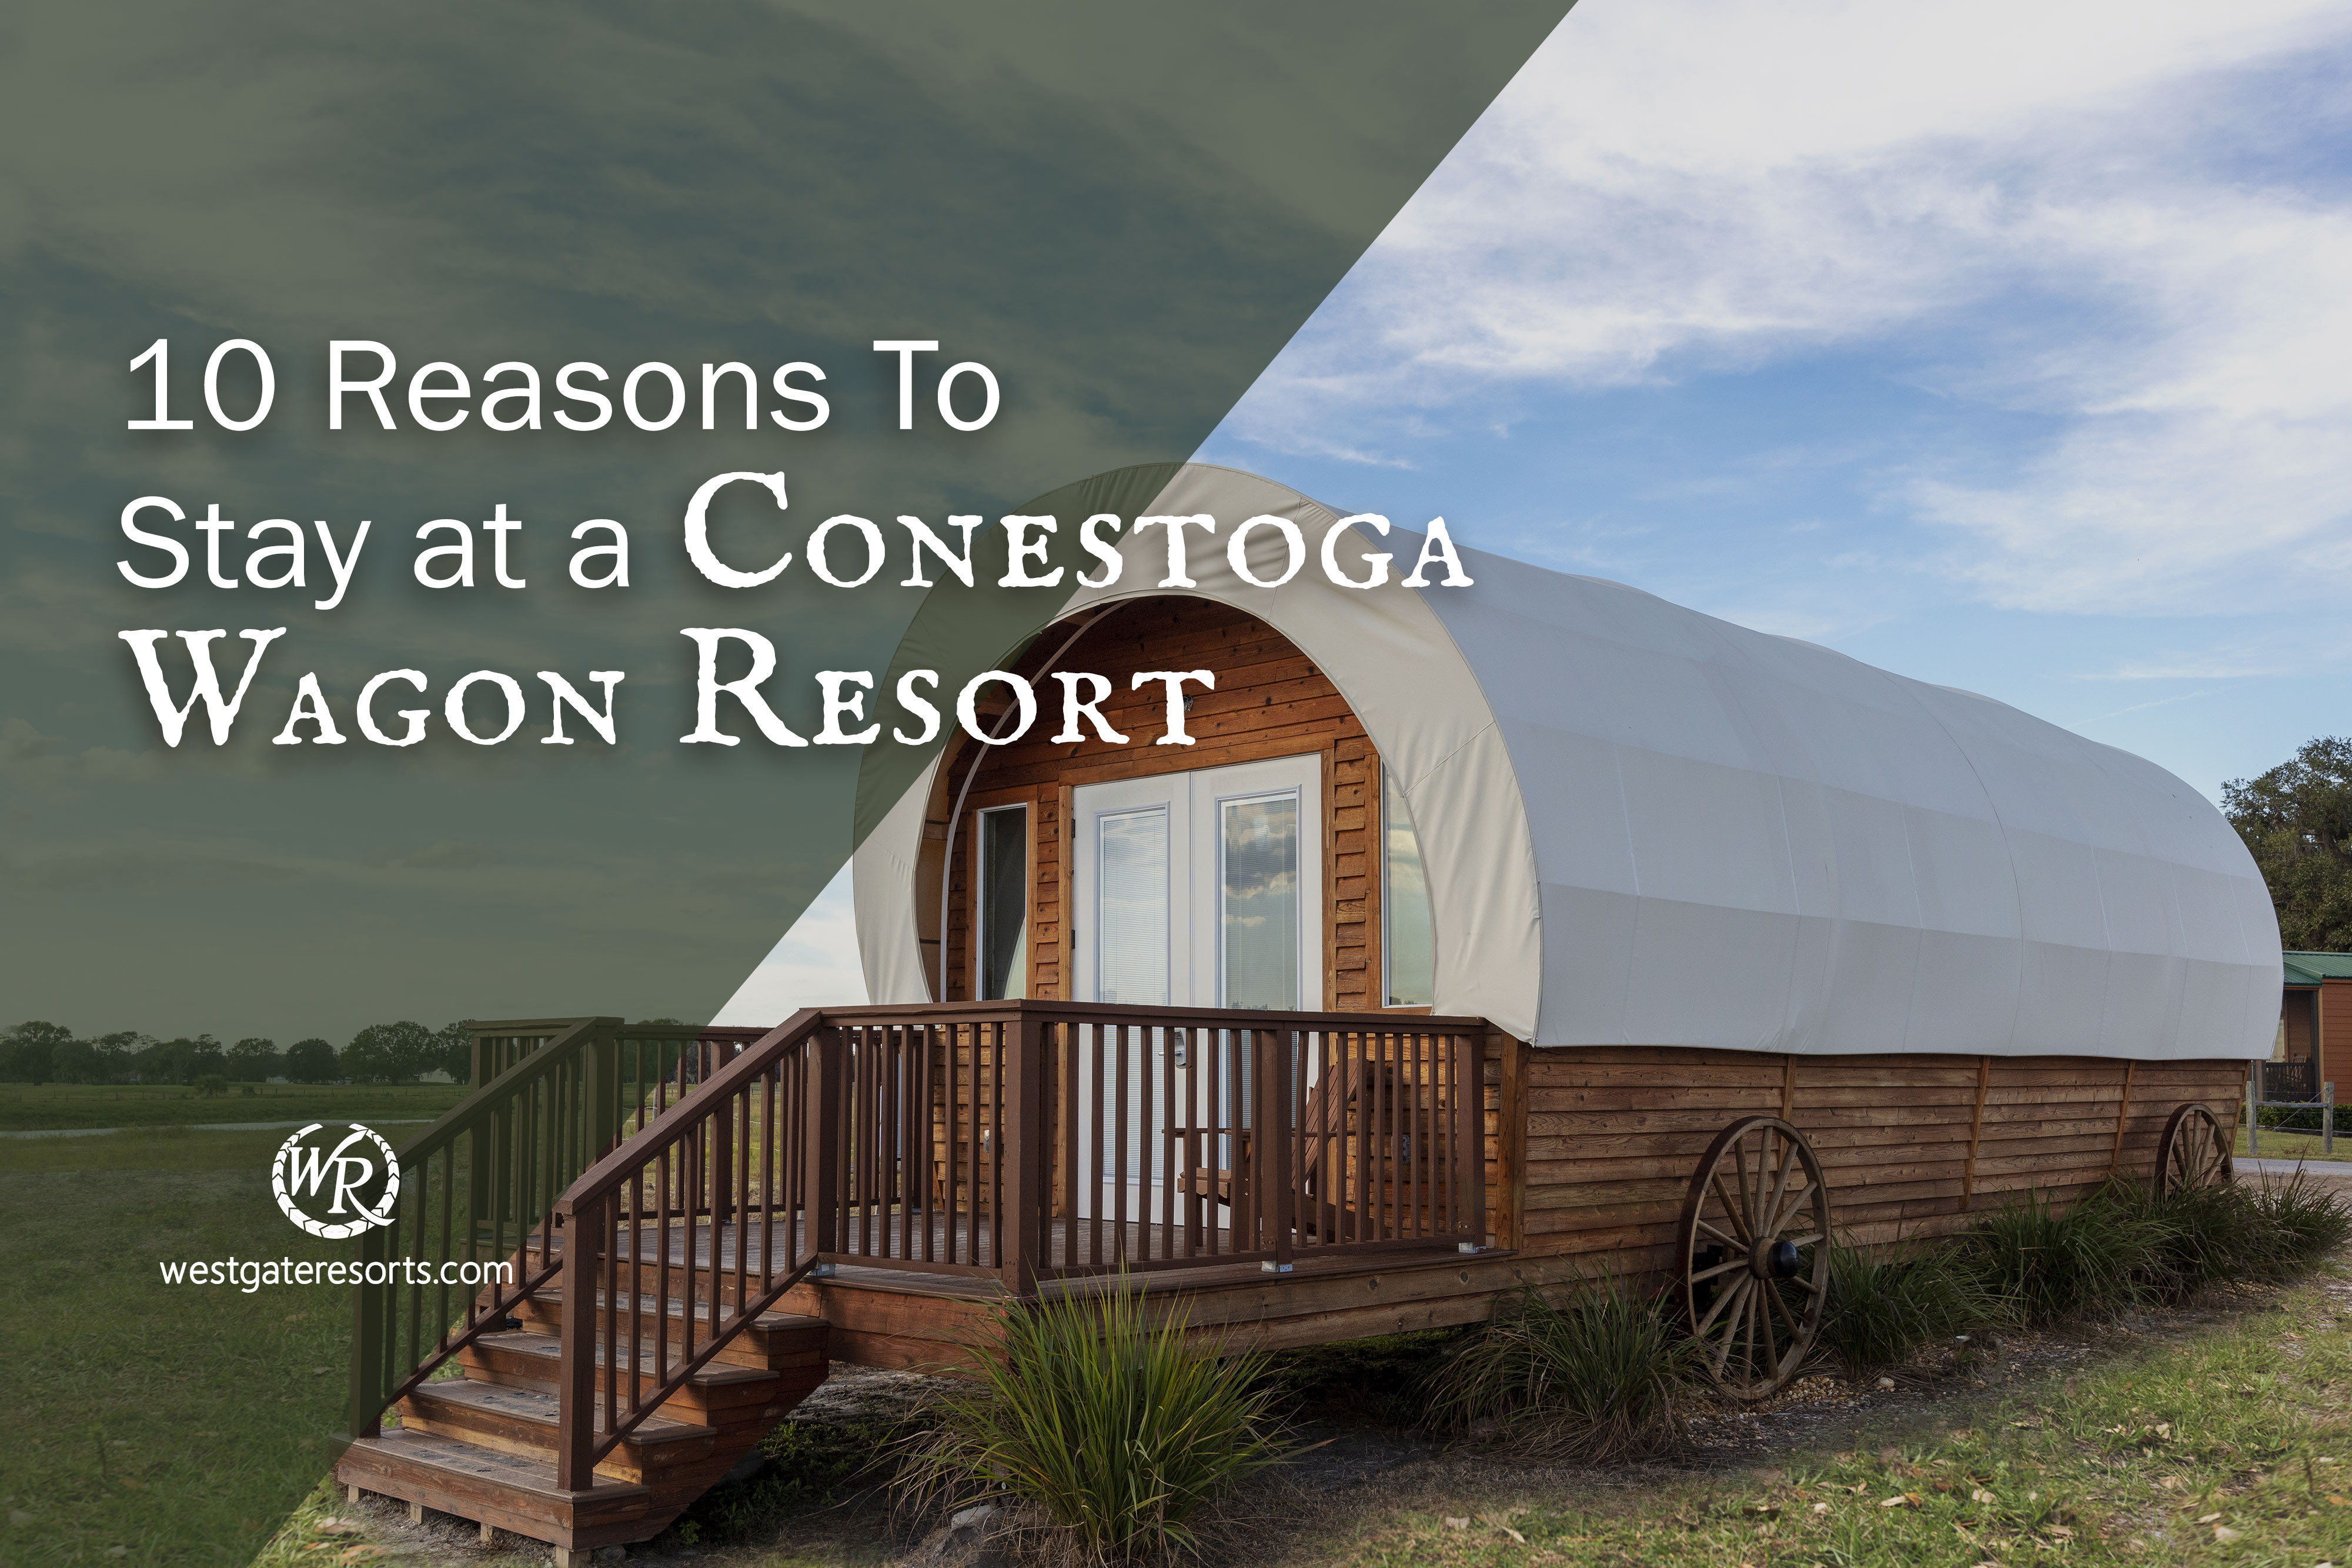 10 razones para hospedarse en un Conestoga Wagon Resort